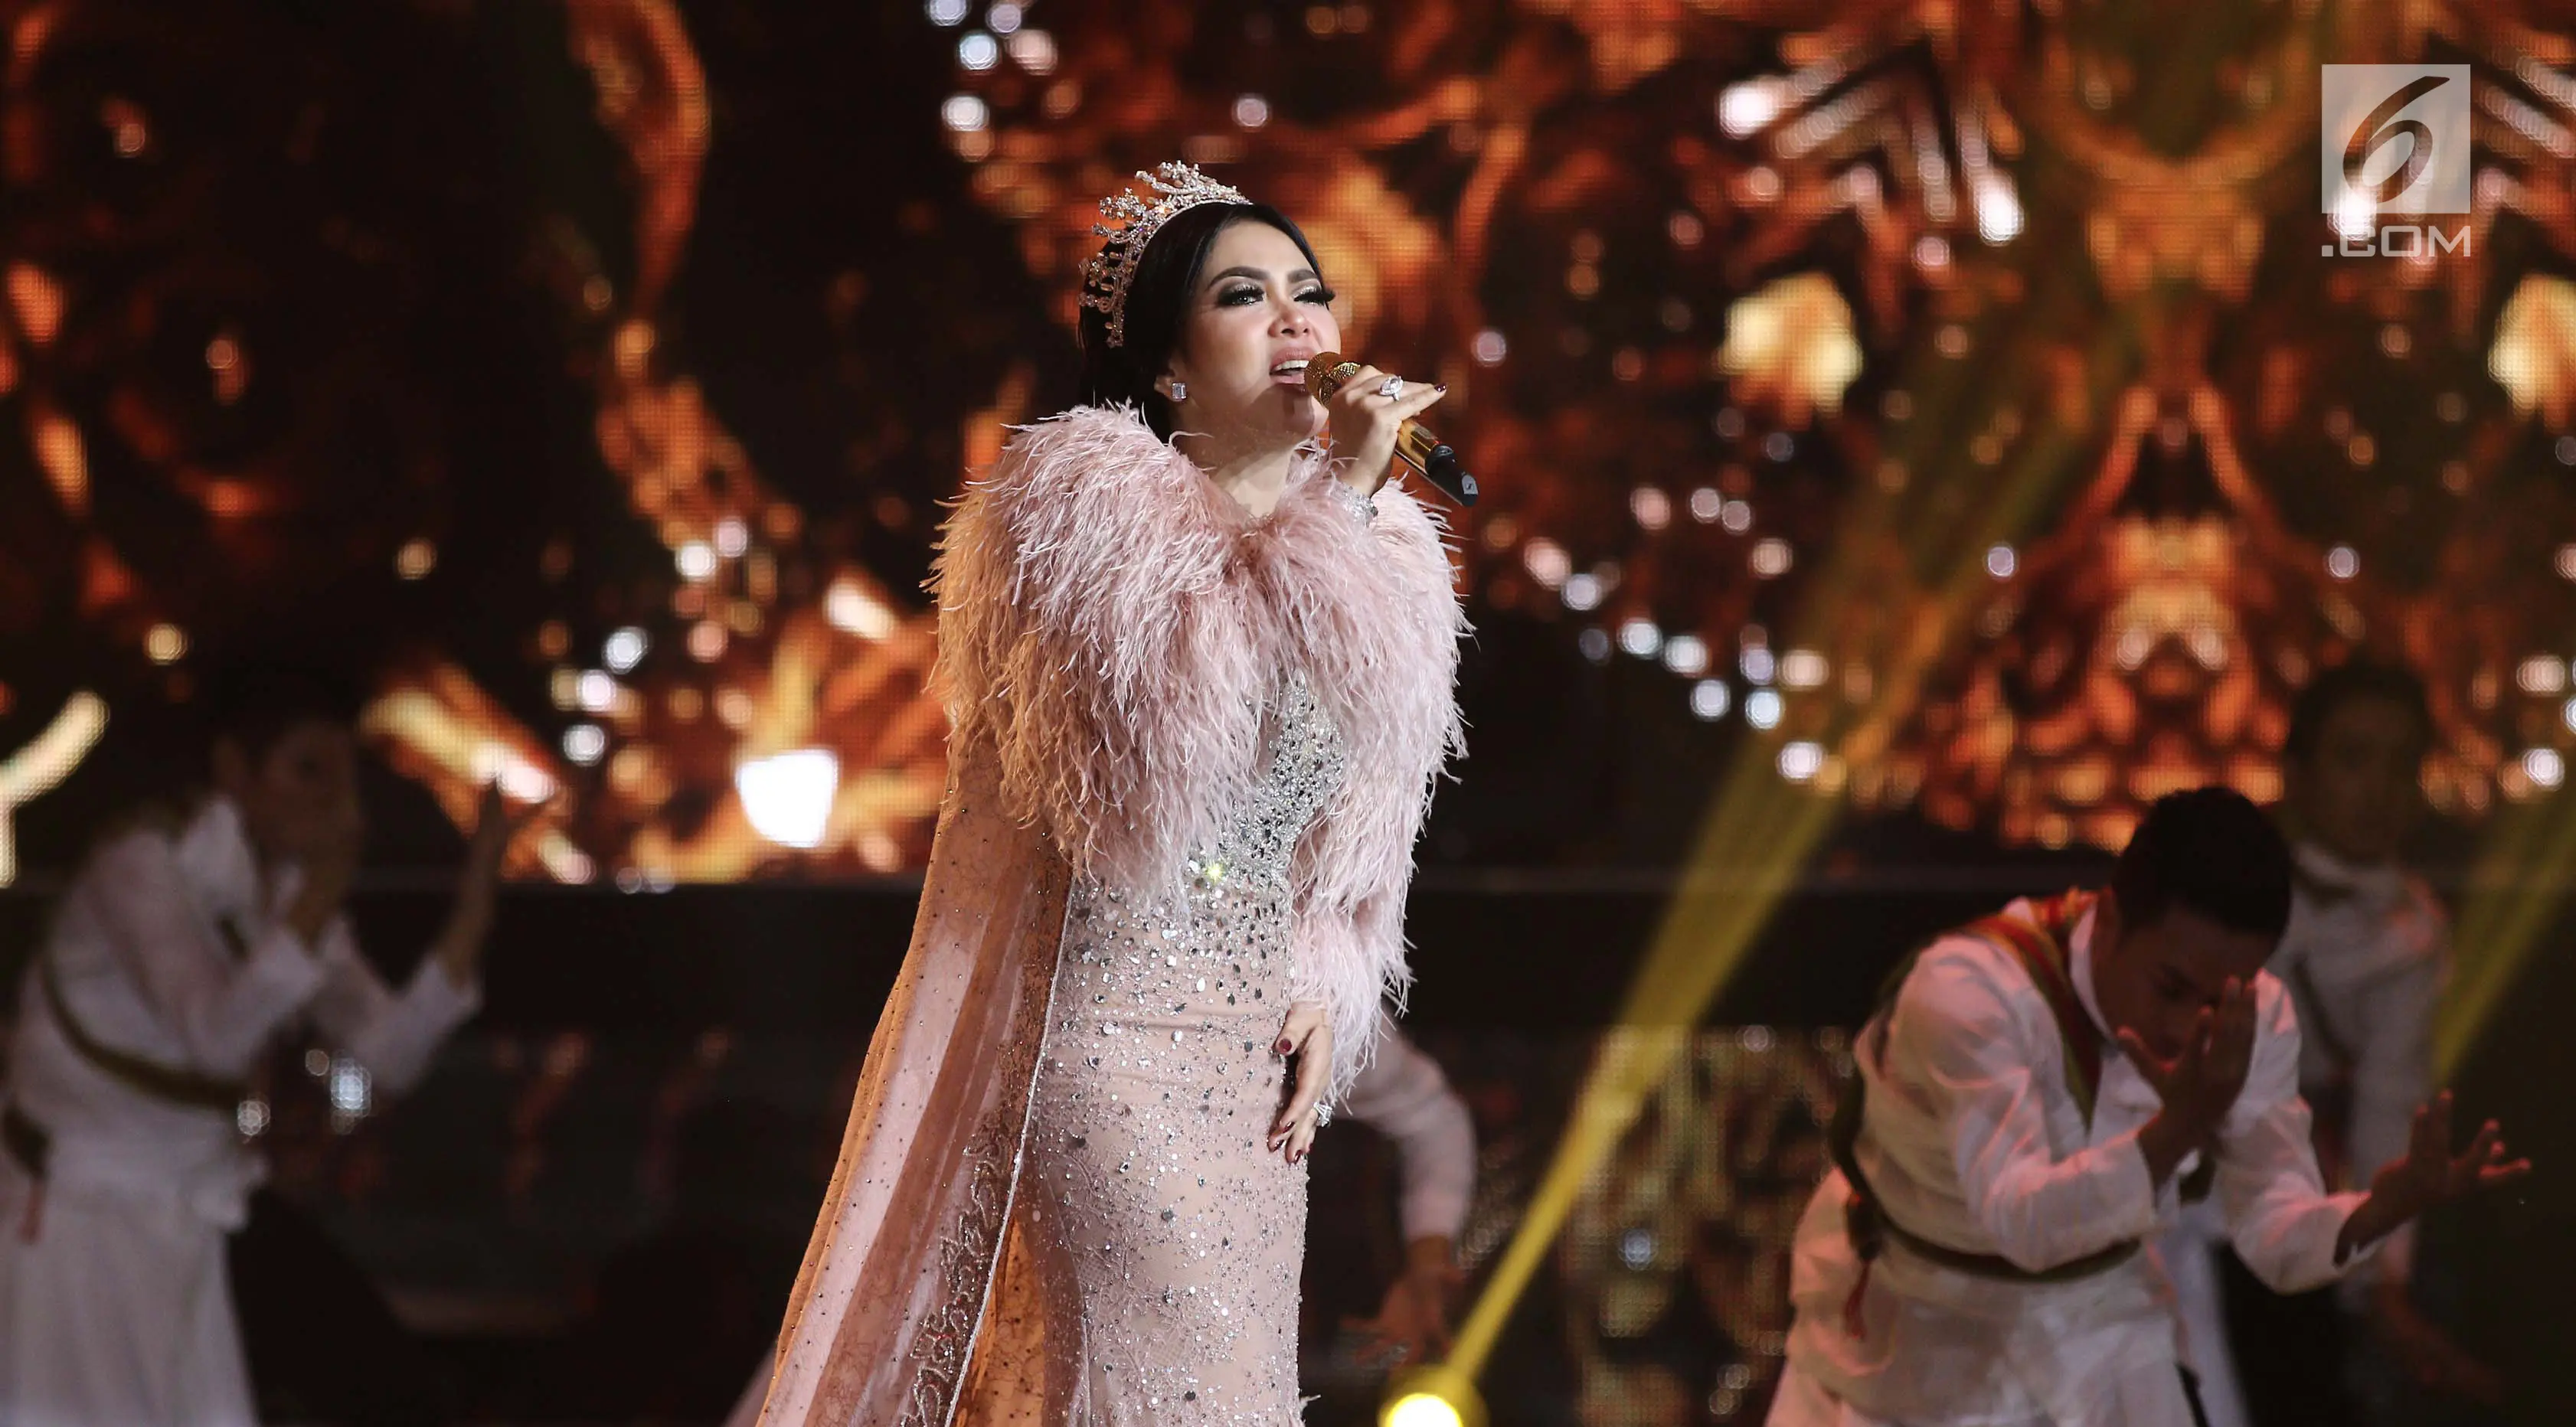  Penyanyi Syahrini saat tampil membawakan singel terbarunya dengan judul "ada wanita lain" pada malam puncak HUT ke-27 SCTV di Hall D, Jiexpo Kemayoran, Jakarta, Kamis (24/8). (Liputan6.com/Herman Zakharia)